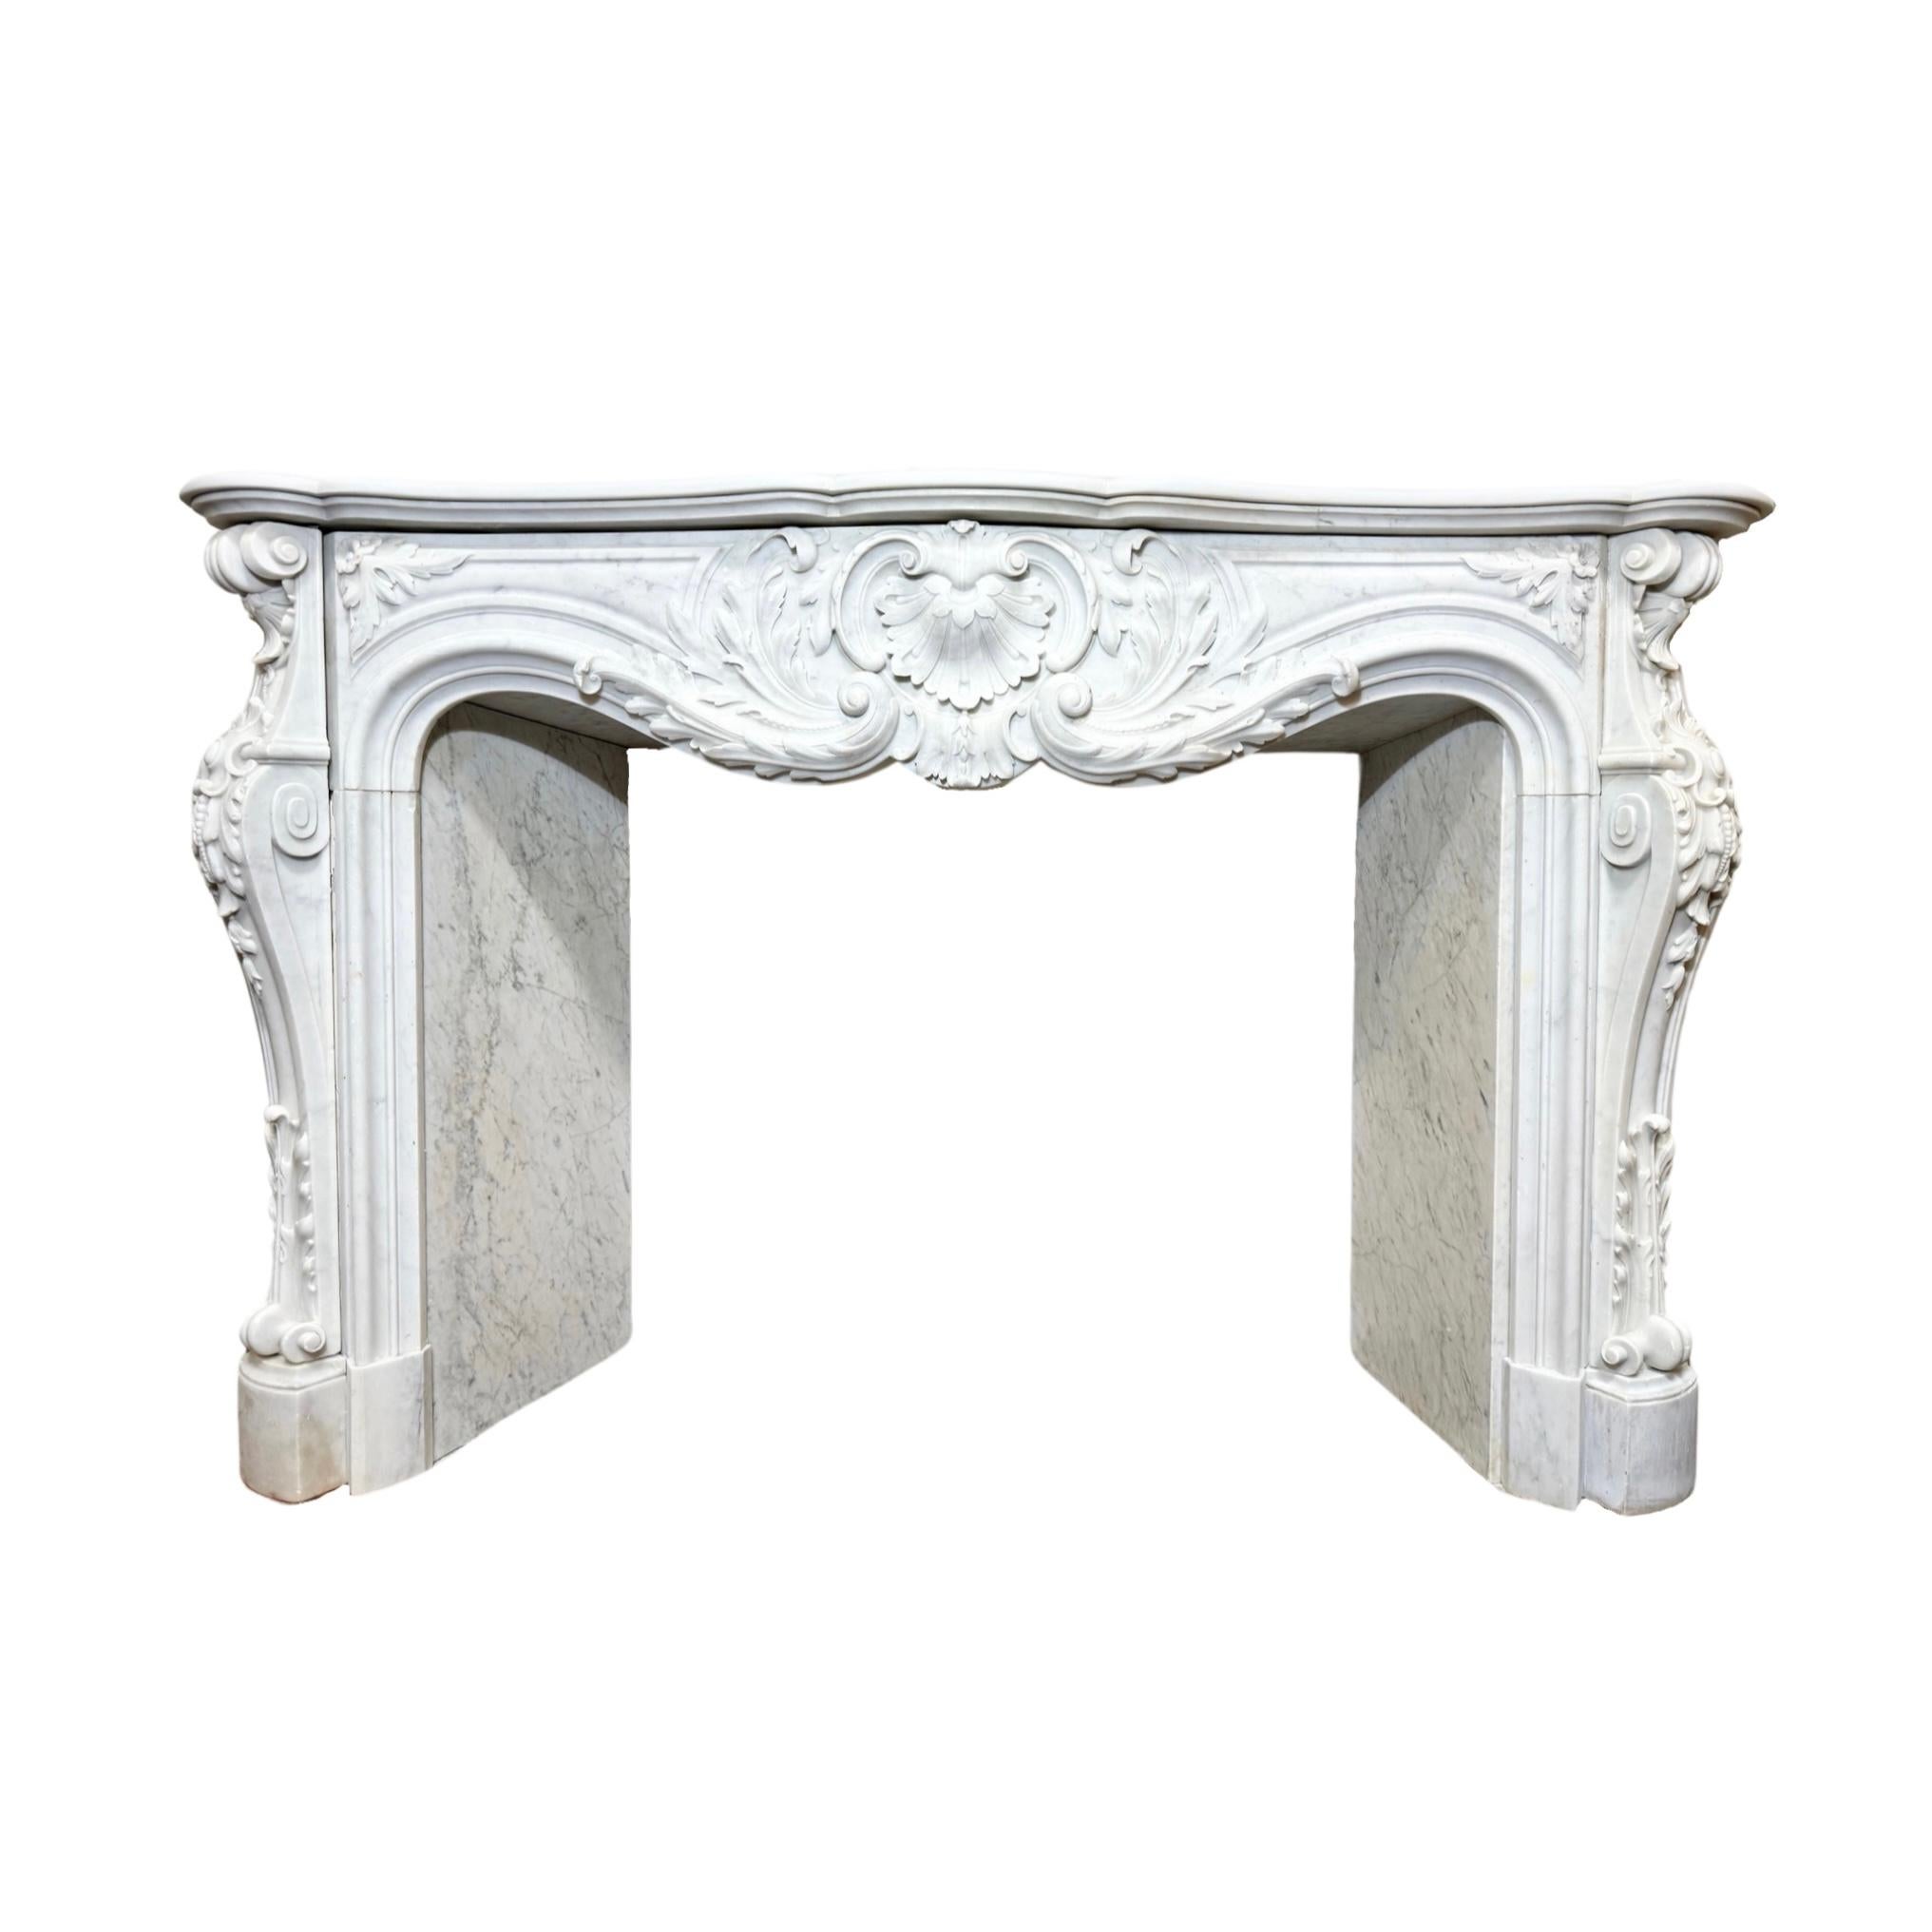 Cette élégante cheminée française en marbre de Carrare est fabriquée à partir de marbre blanc de Carrare de haute qualité, réputé pour sa durabilité et sa beauté intemporelle. Avec son design sculpté dans le style Louis XV des années 1820, cette